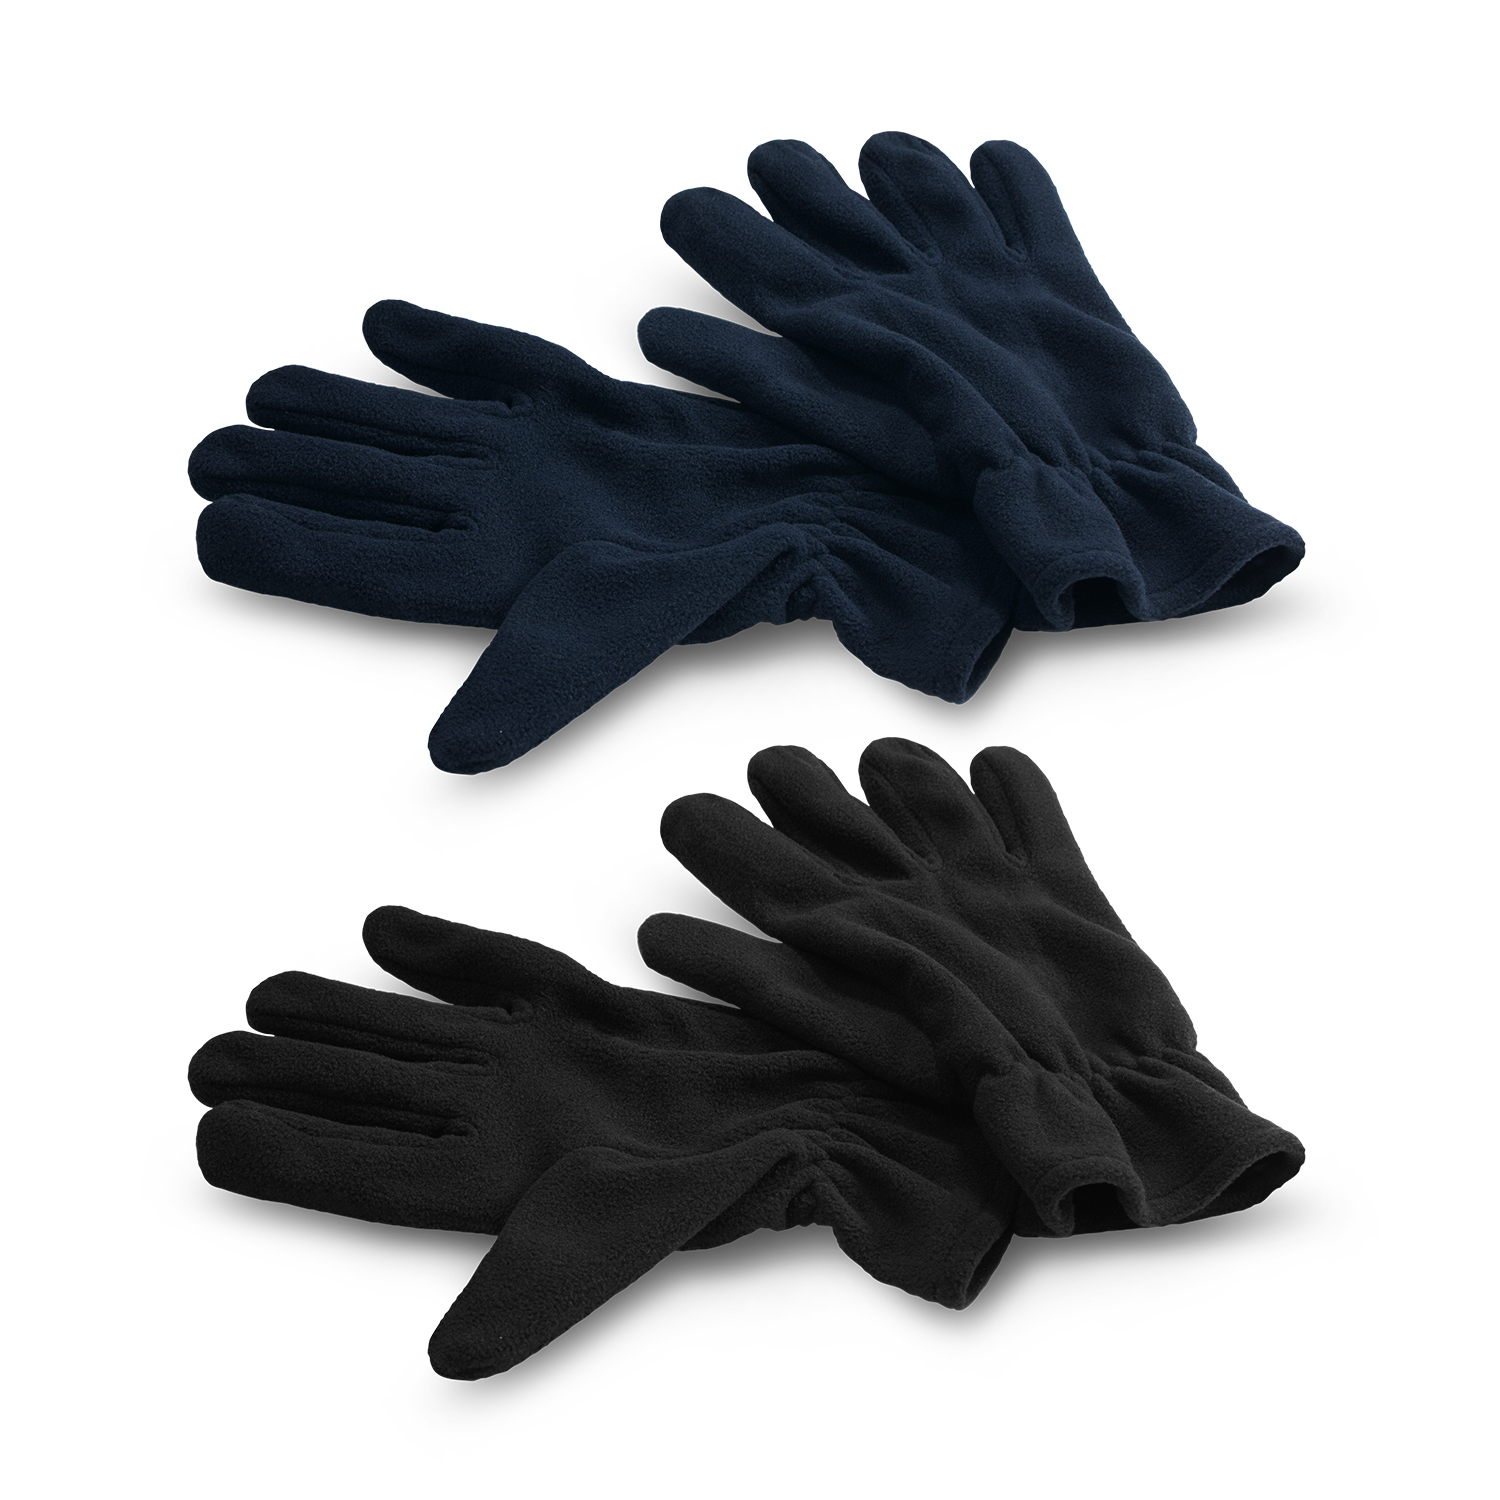 Sport Seattle Fleece Gloves fleece